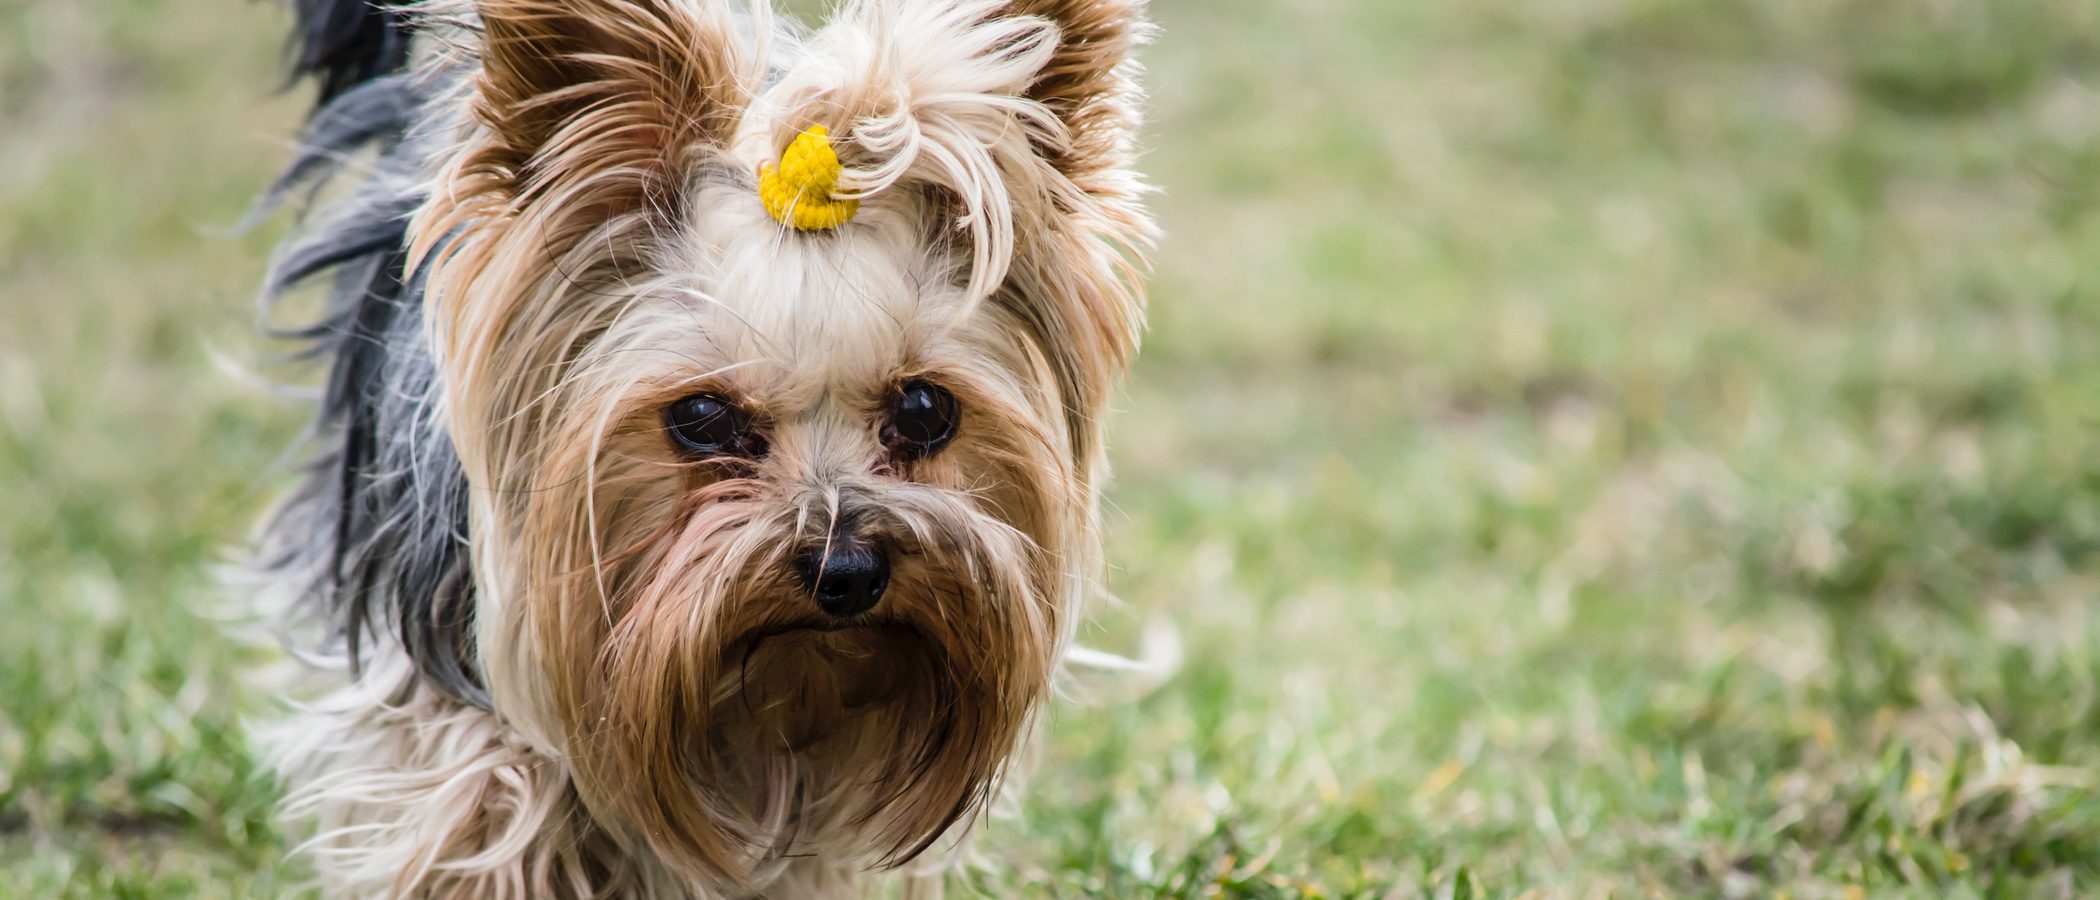 Poner accesorios en el pelo de tu perro A favor o en contra  Bekia  Mascotas